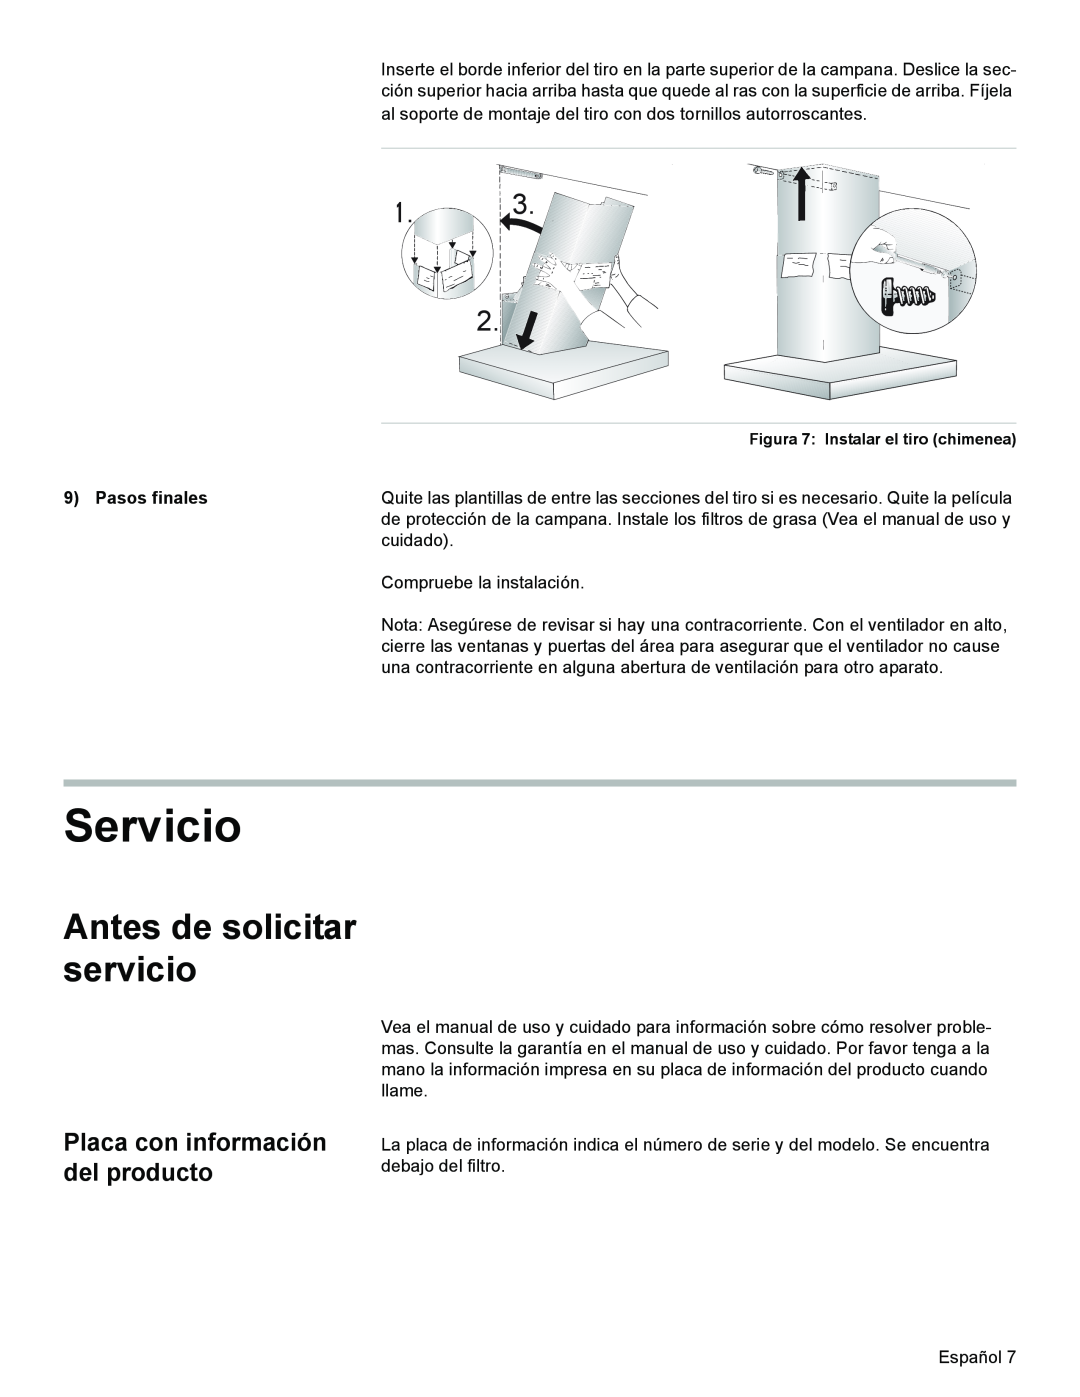 Bosch Appliances DKE94 Servicio, Antes de solicitar servicio, Placa con información del producto, Pasos finales 